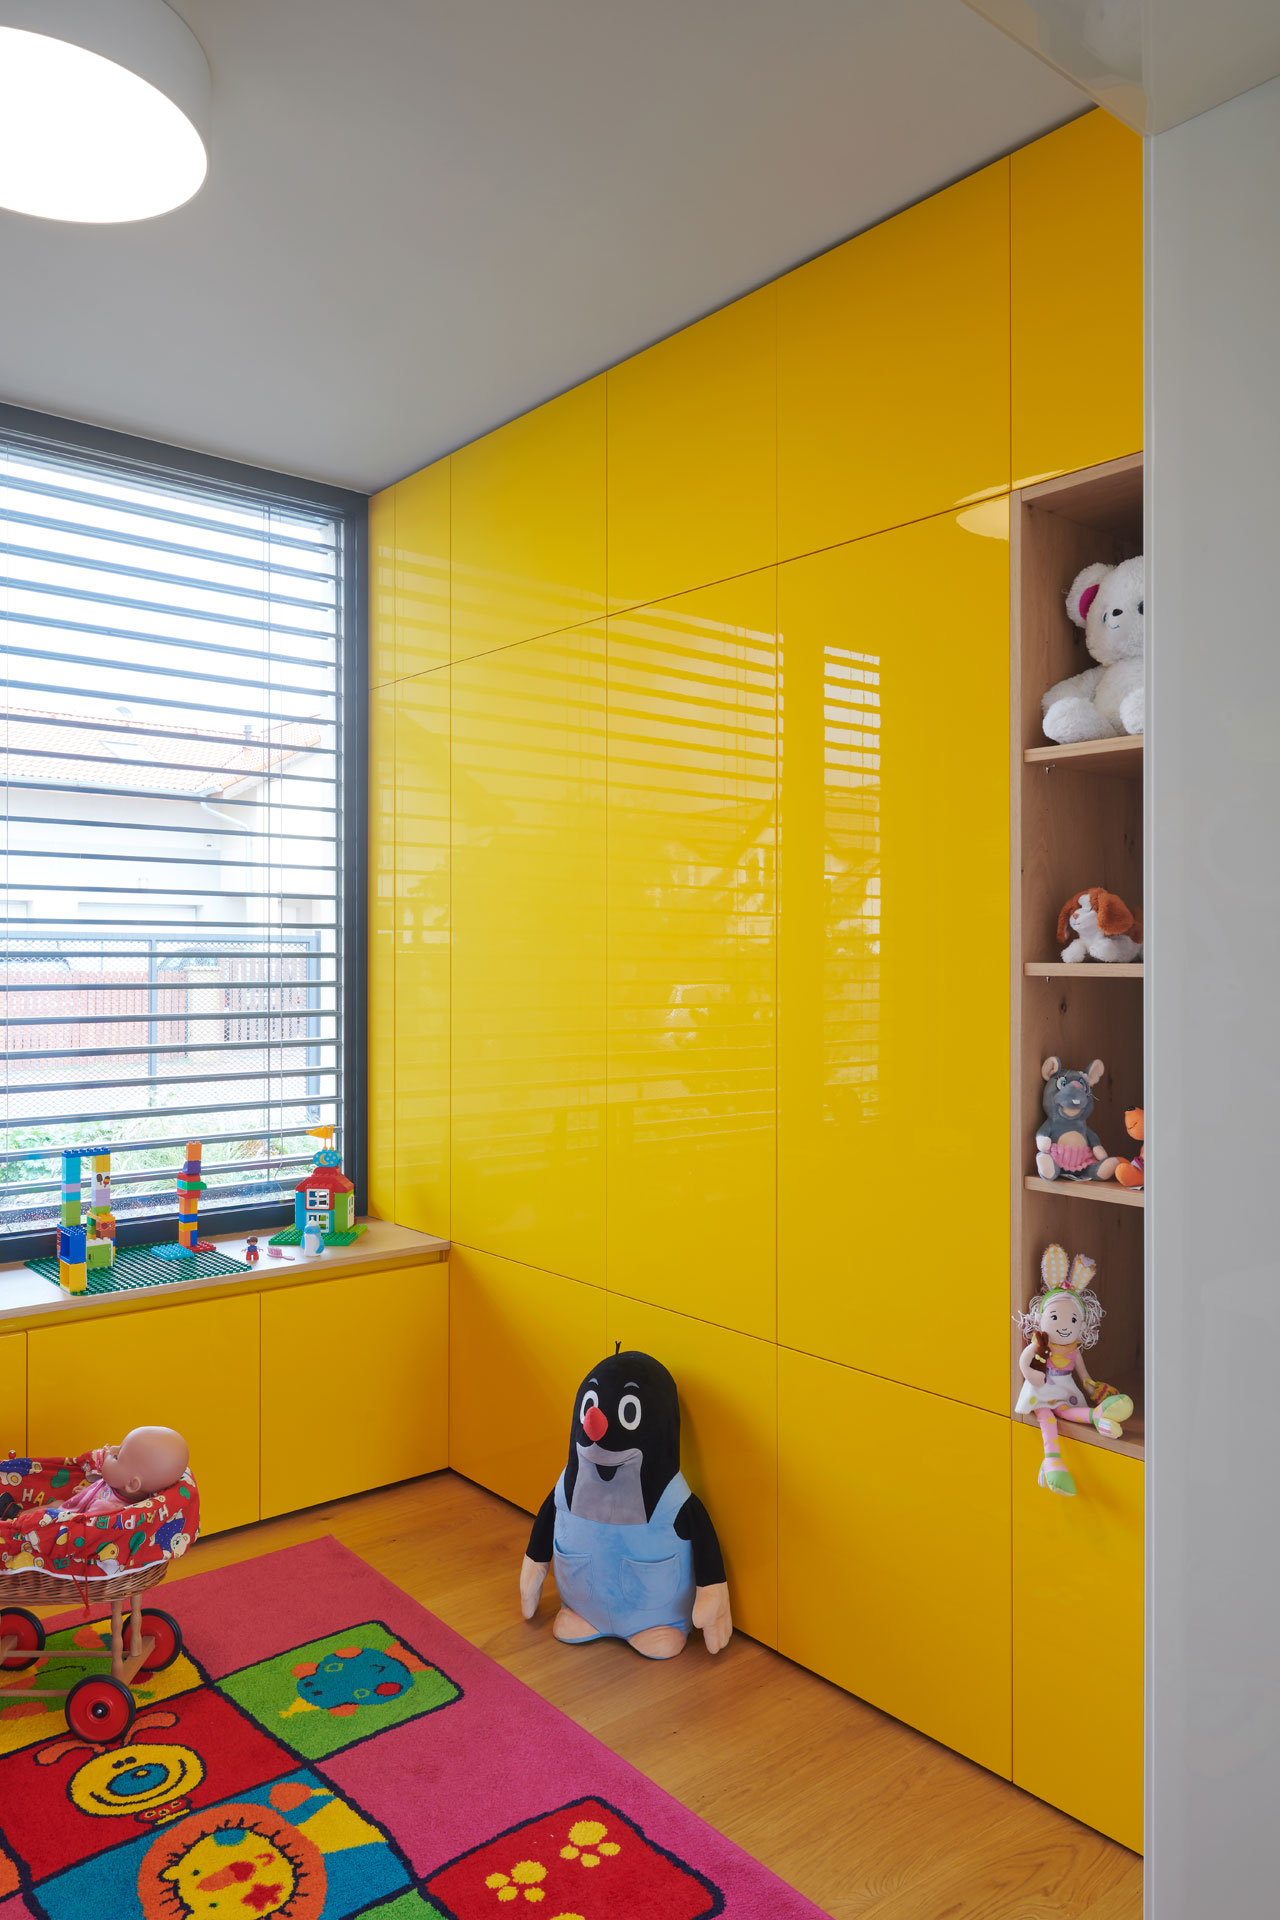 Hanák nábytek Moderní dům Ukázka realizace Interiér Herna Žlutý lak